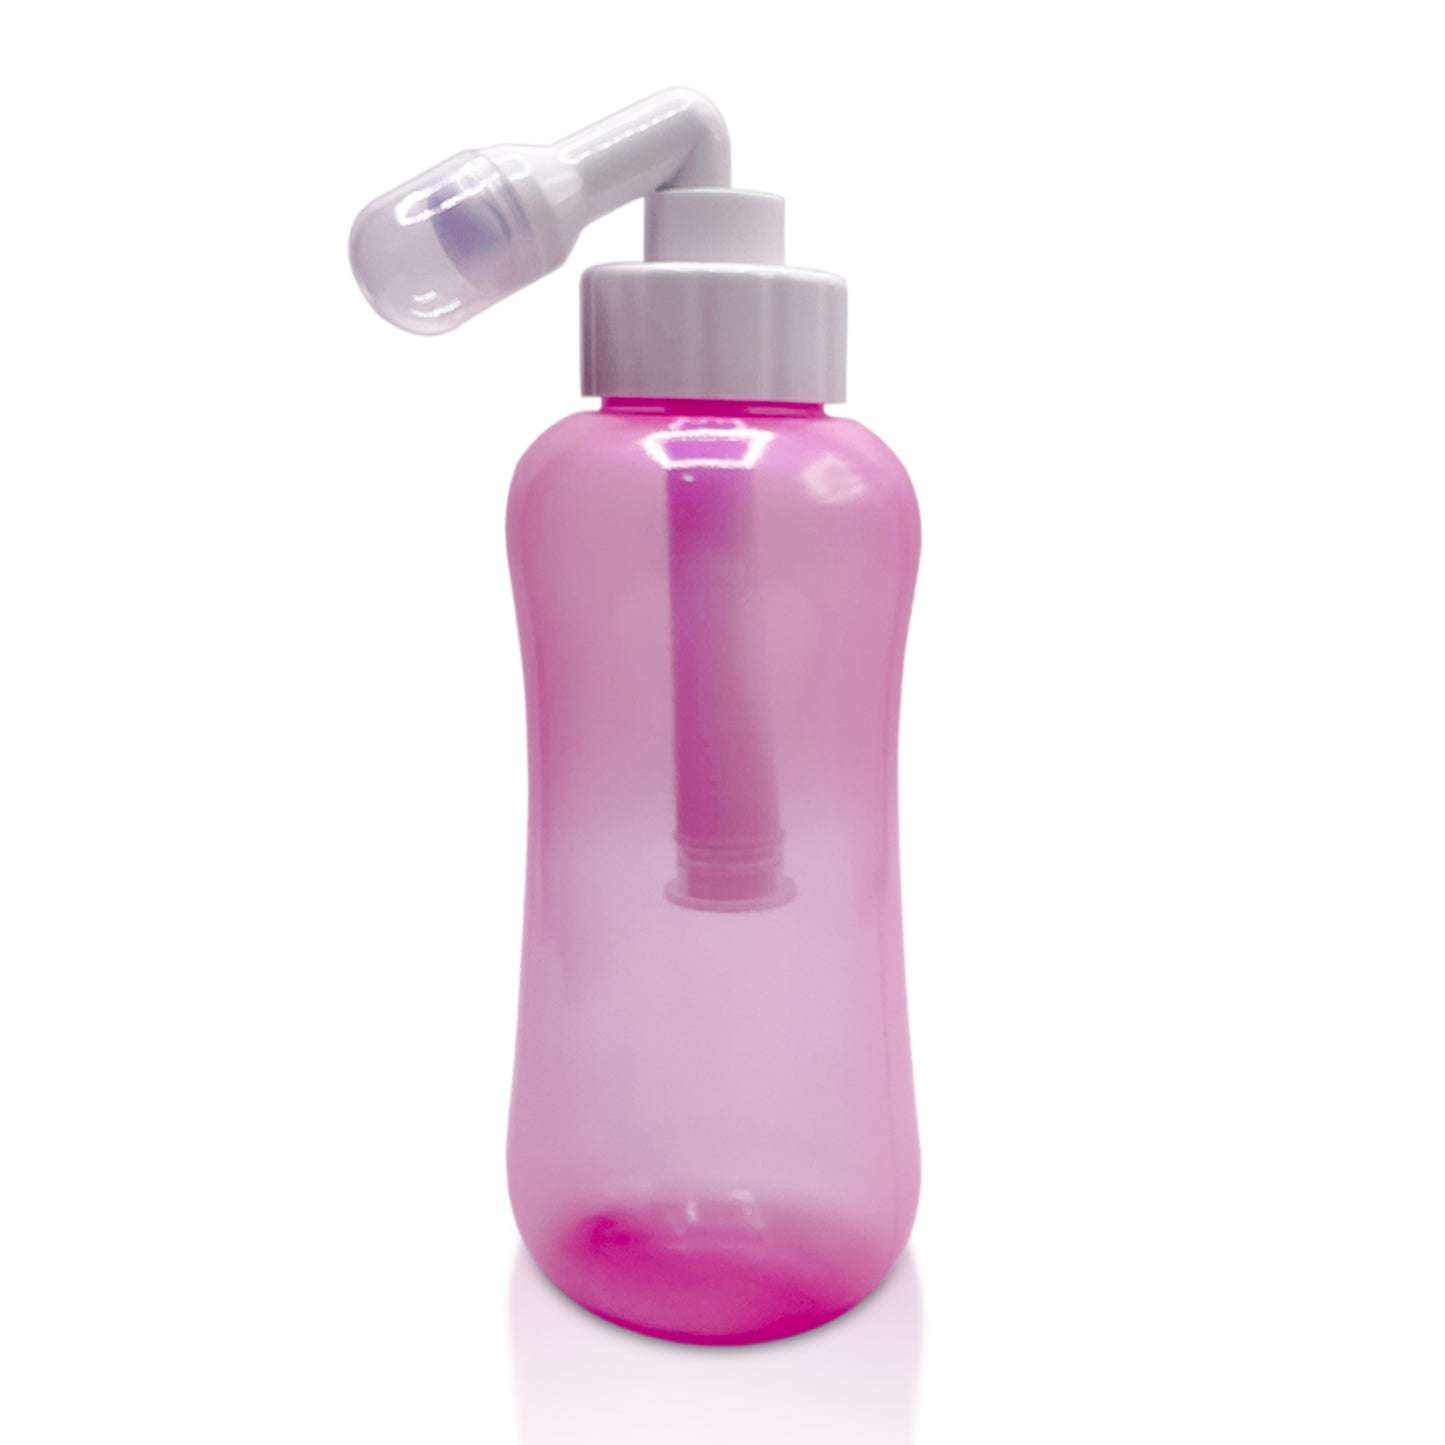 JEP 301 Premium Perry Bidet Bottle for Women & Men - Use on the Go